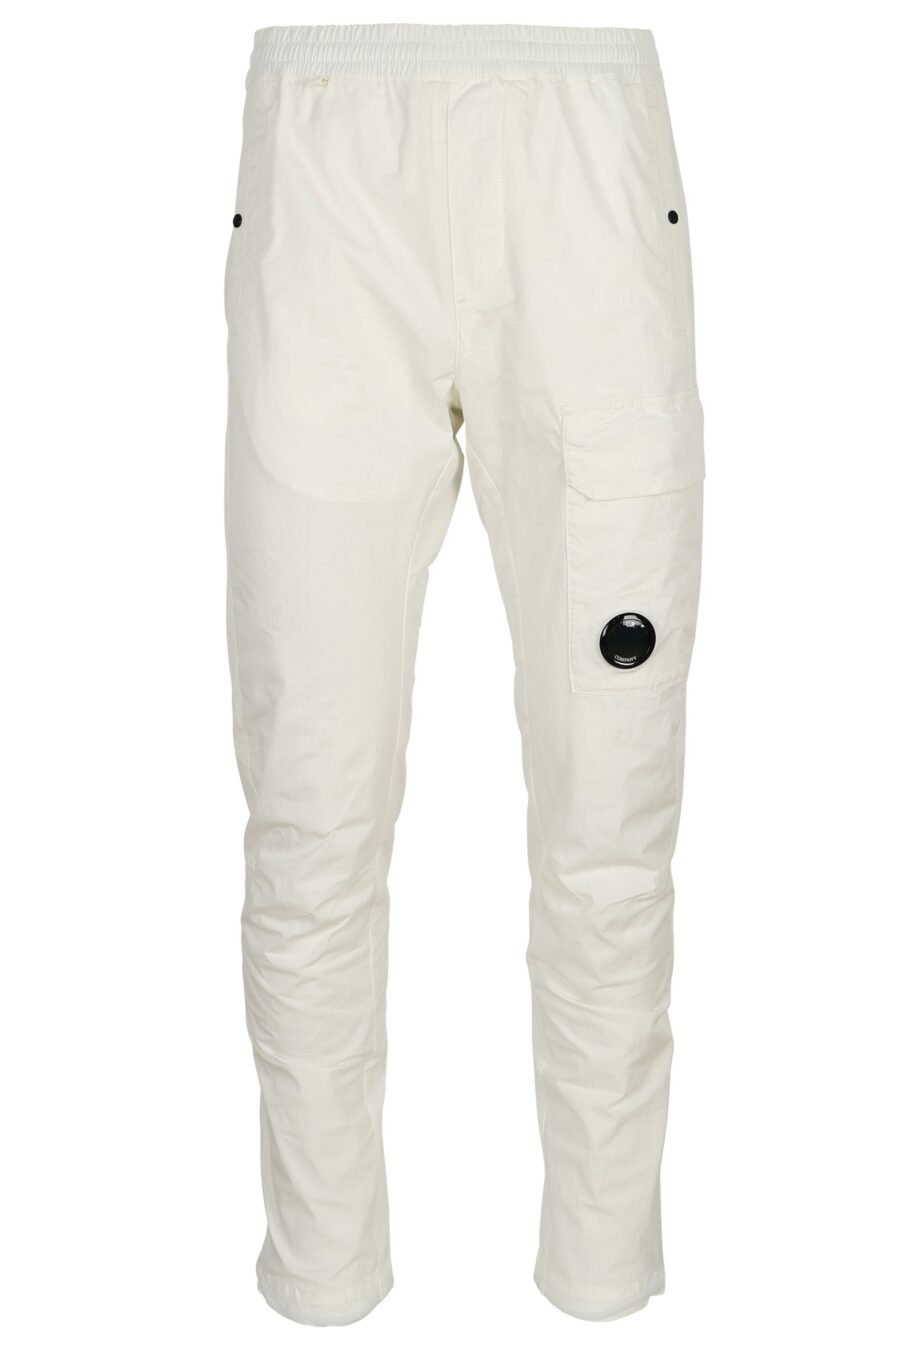 White cargo trousers with lens mini-logo - 7620943804751